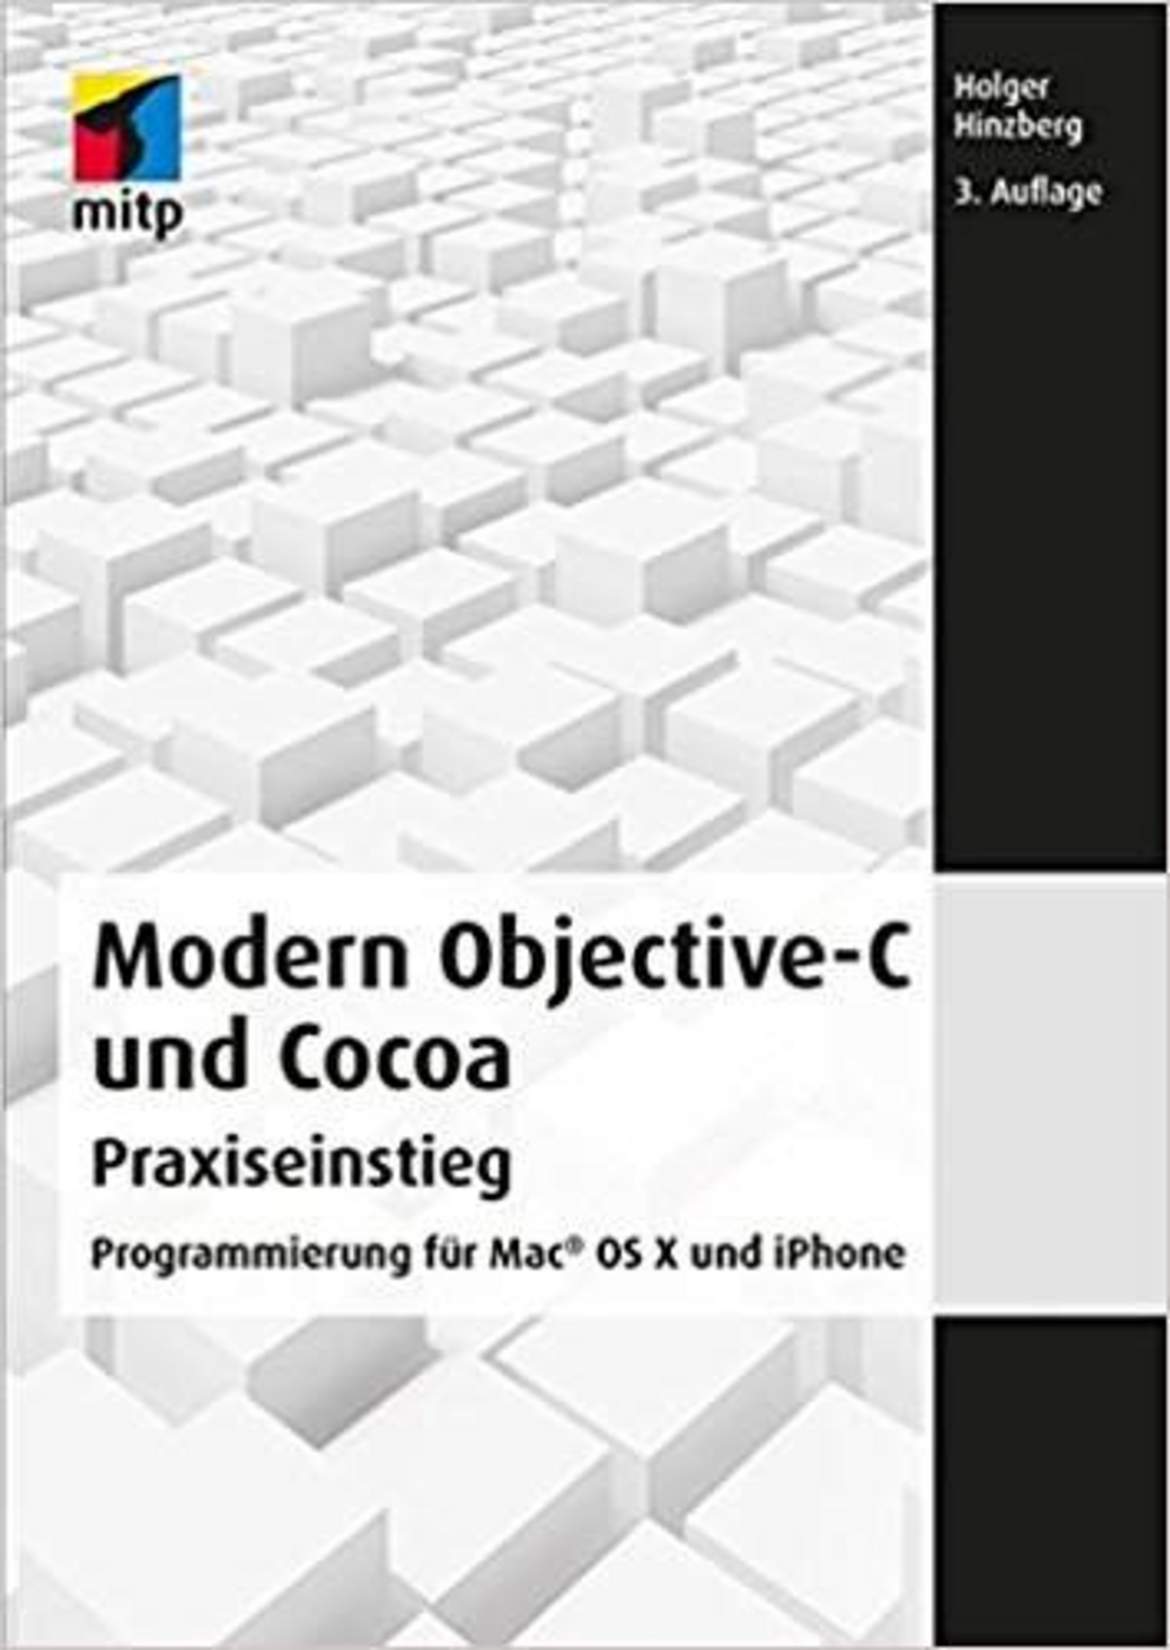 Objective-C und Cocoa Praxiseinstieg: Programmierung für Mac OS X und iPhone